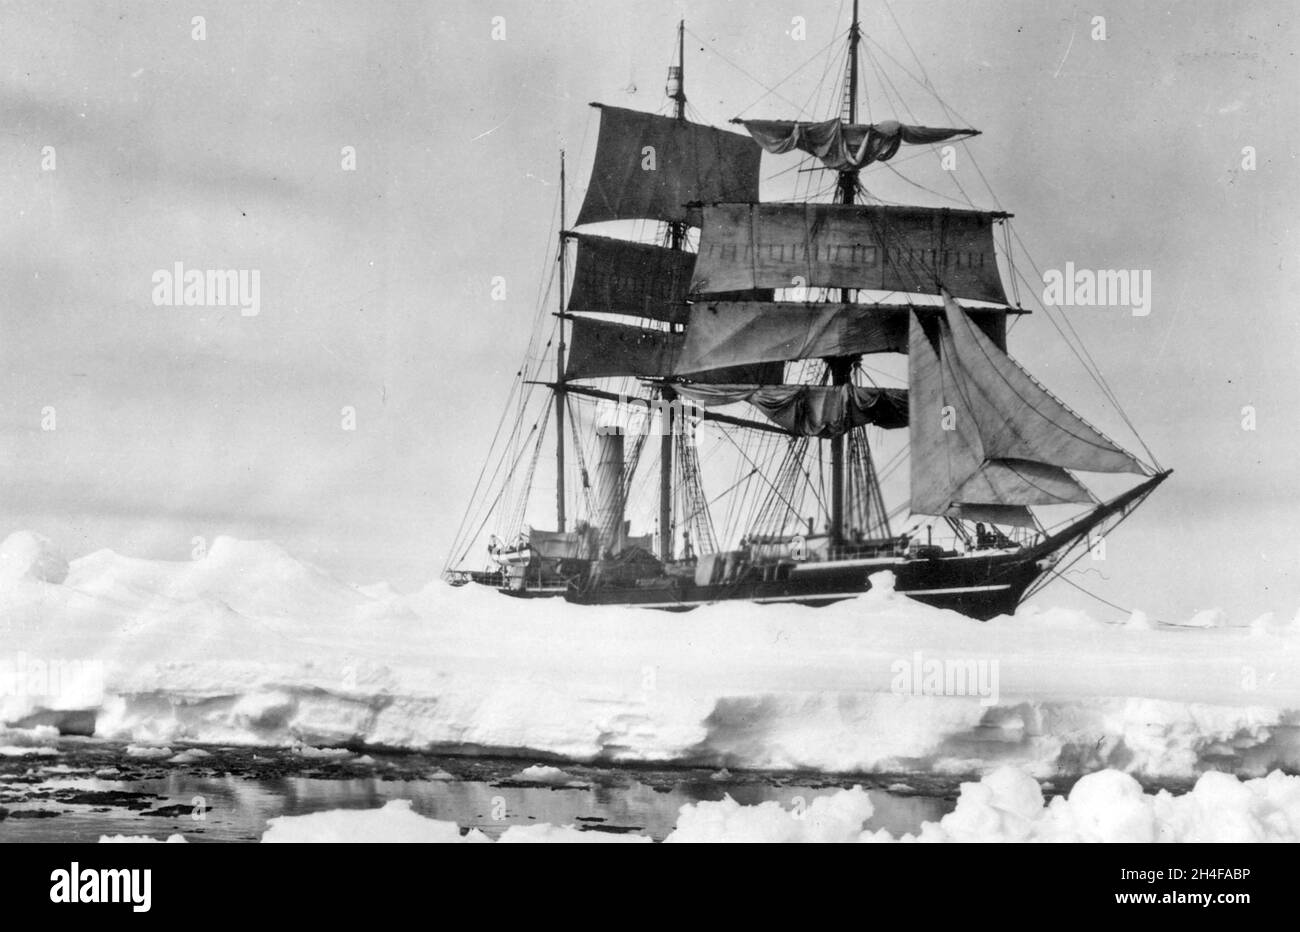 EXPÉDITION TERRA NOVA 1910-1913.Le navire de Robert Falcon Scott le Terra Nova photographié par Herbert Ponting Banque D'Images